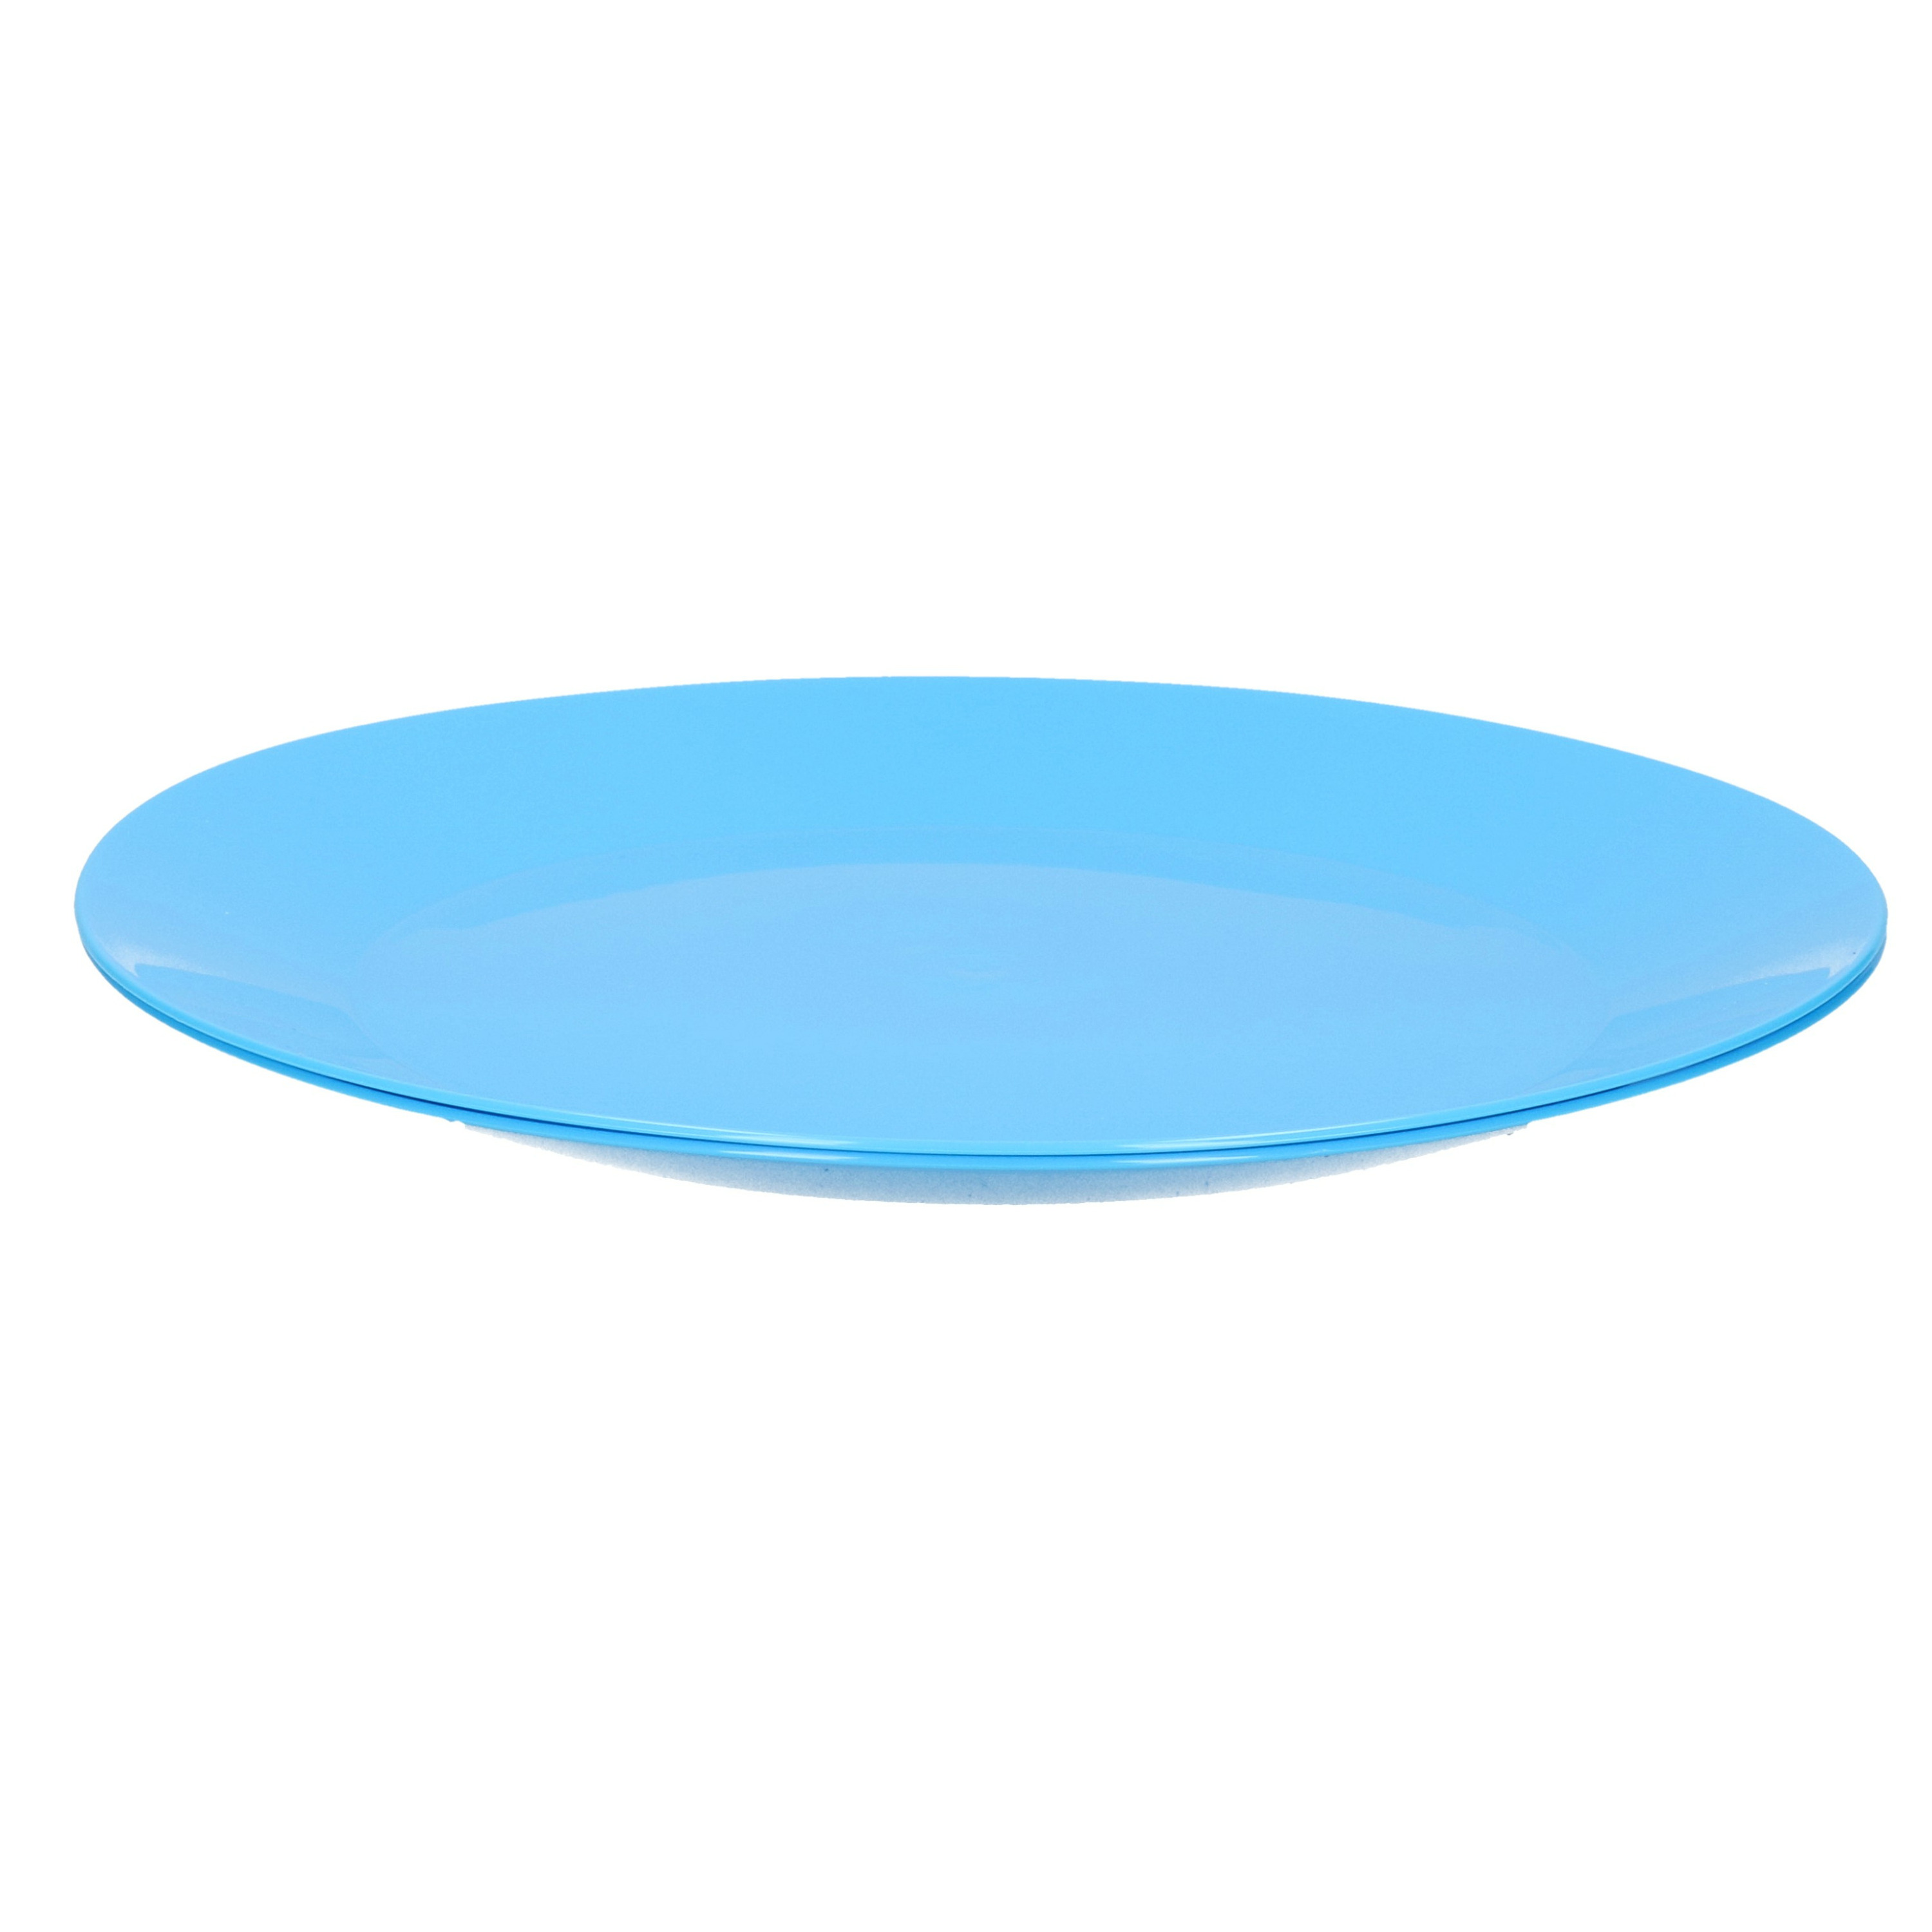 3x ontbijt-diner bordjes van hard kunststof 21 cm in het blauw